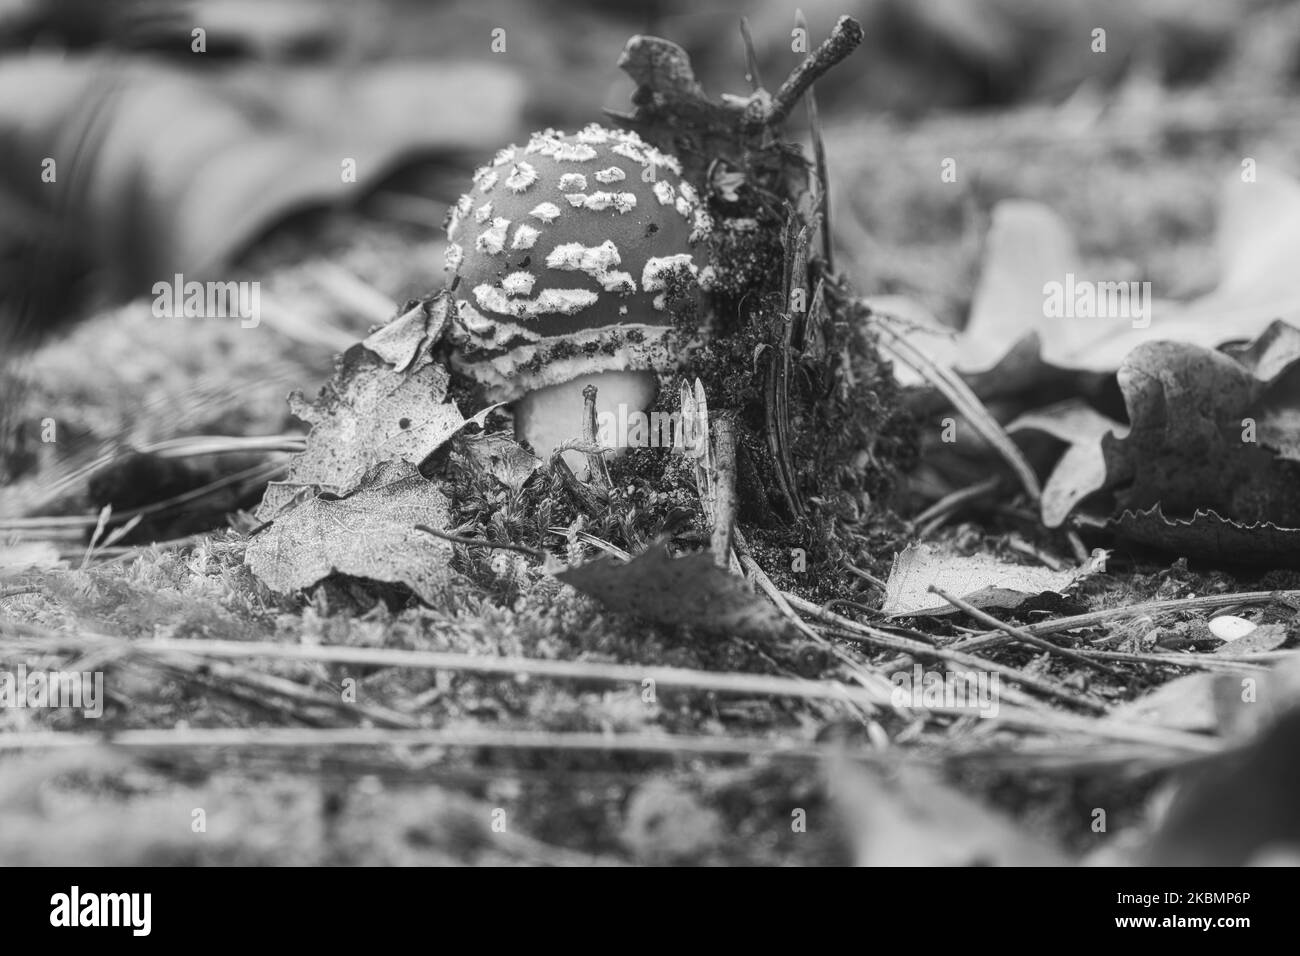 Der in Schwarz und Weiß gehaltene Zehenstool liegt auf dem Boden eines Nadelwaldes im Wald. Giftiger Pilz. Roter Hut mit weißen Flecken. Nahaufnahme von nat Stockfoto